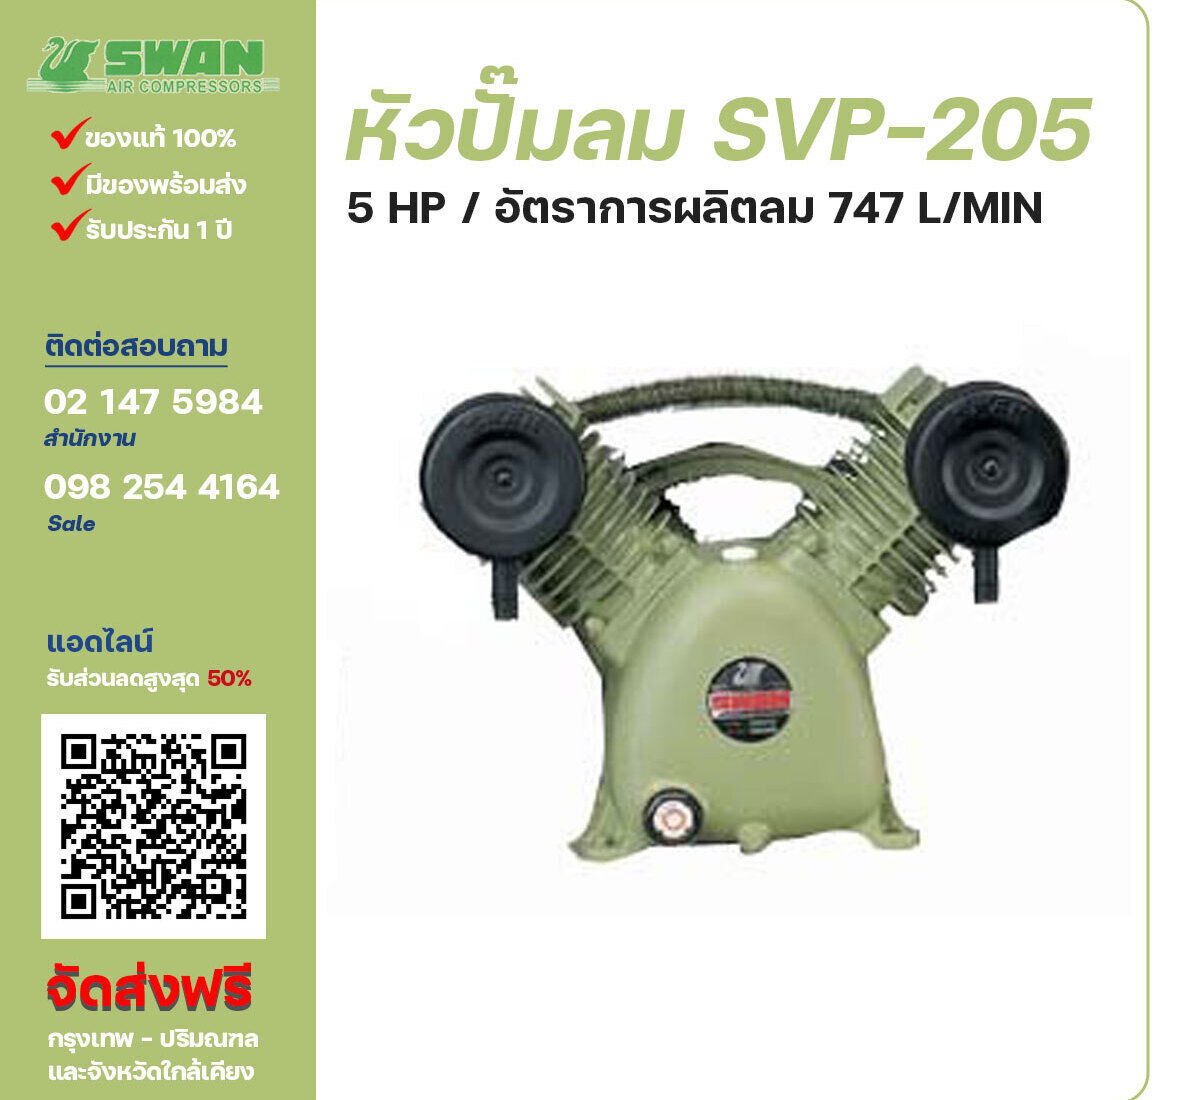 จำหน่ายหัวปั๊มลมสวอน ของแท้ 100% SWAN Bare Compressor รุ่น SVP-205 ขนาด 5 แรงม้า อัตราการผลิตลม 545 ลิตร / นาที รับประกัน 3 เดือน ตามเงื่อนไขของบริษัทฯ จัดส่งฟรี กรุงเทพ-ปริมณฑล